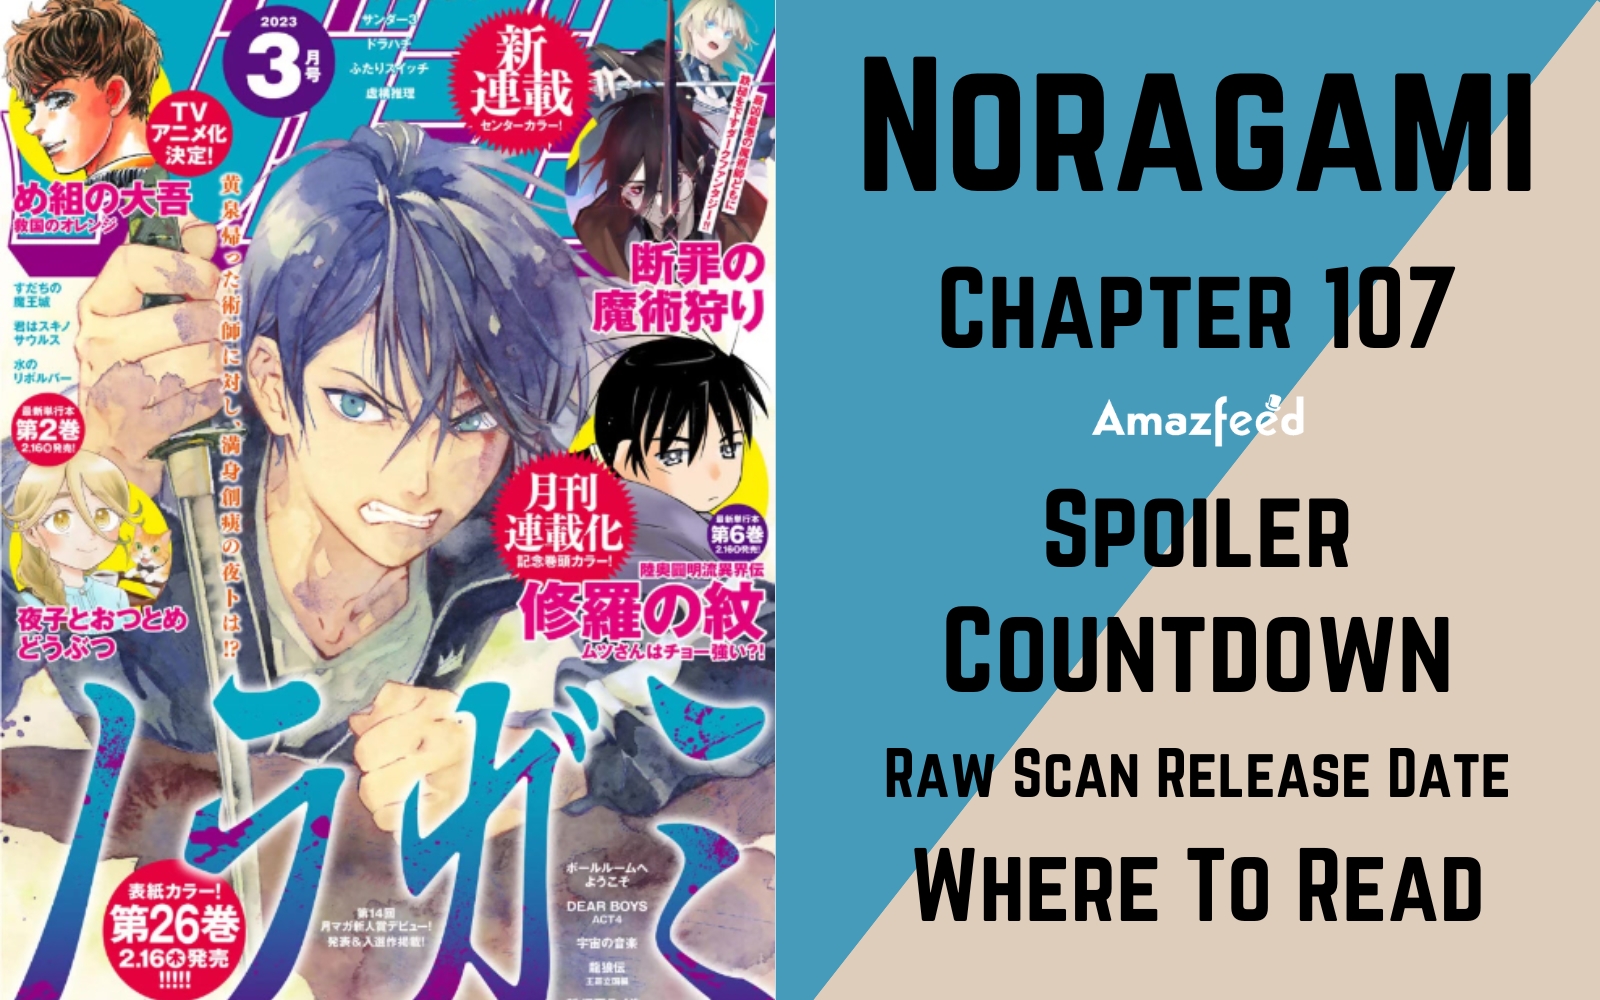 ⚠️ spoiler #fy #anime #edit #manga #noragami #hiyori #yato #cap107